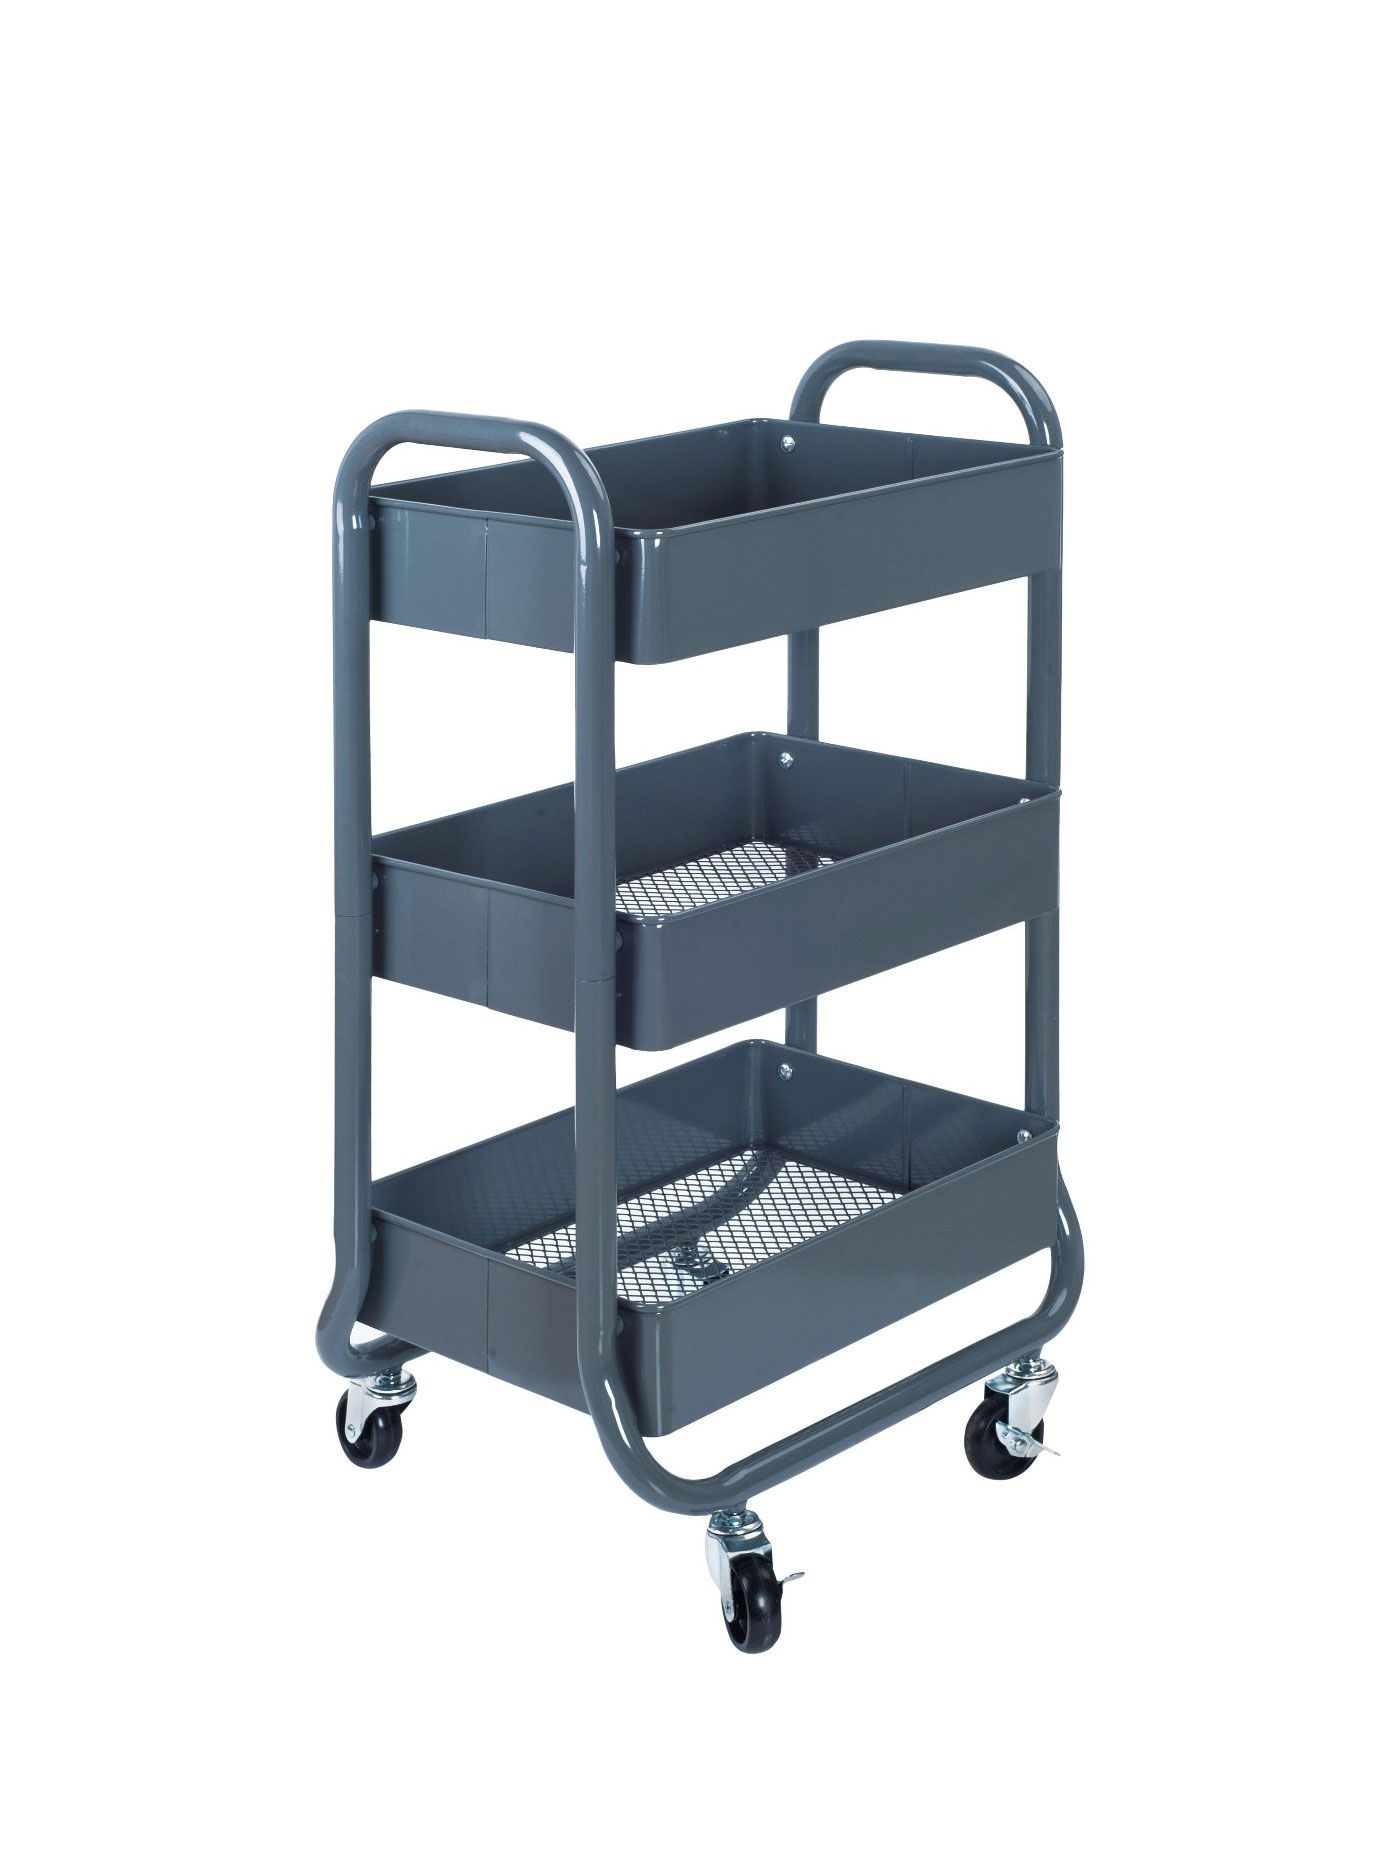 Room Essentials 3-Tier Rolling Cart in Gray